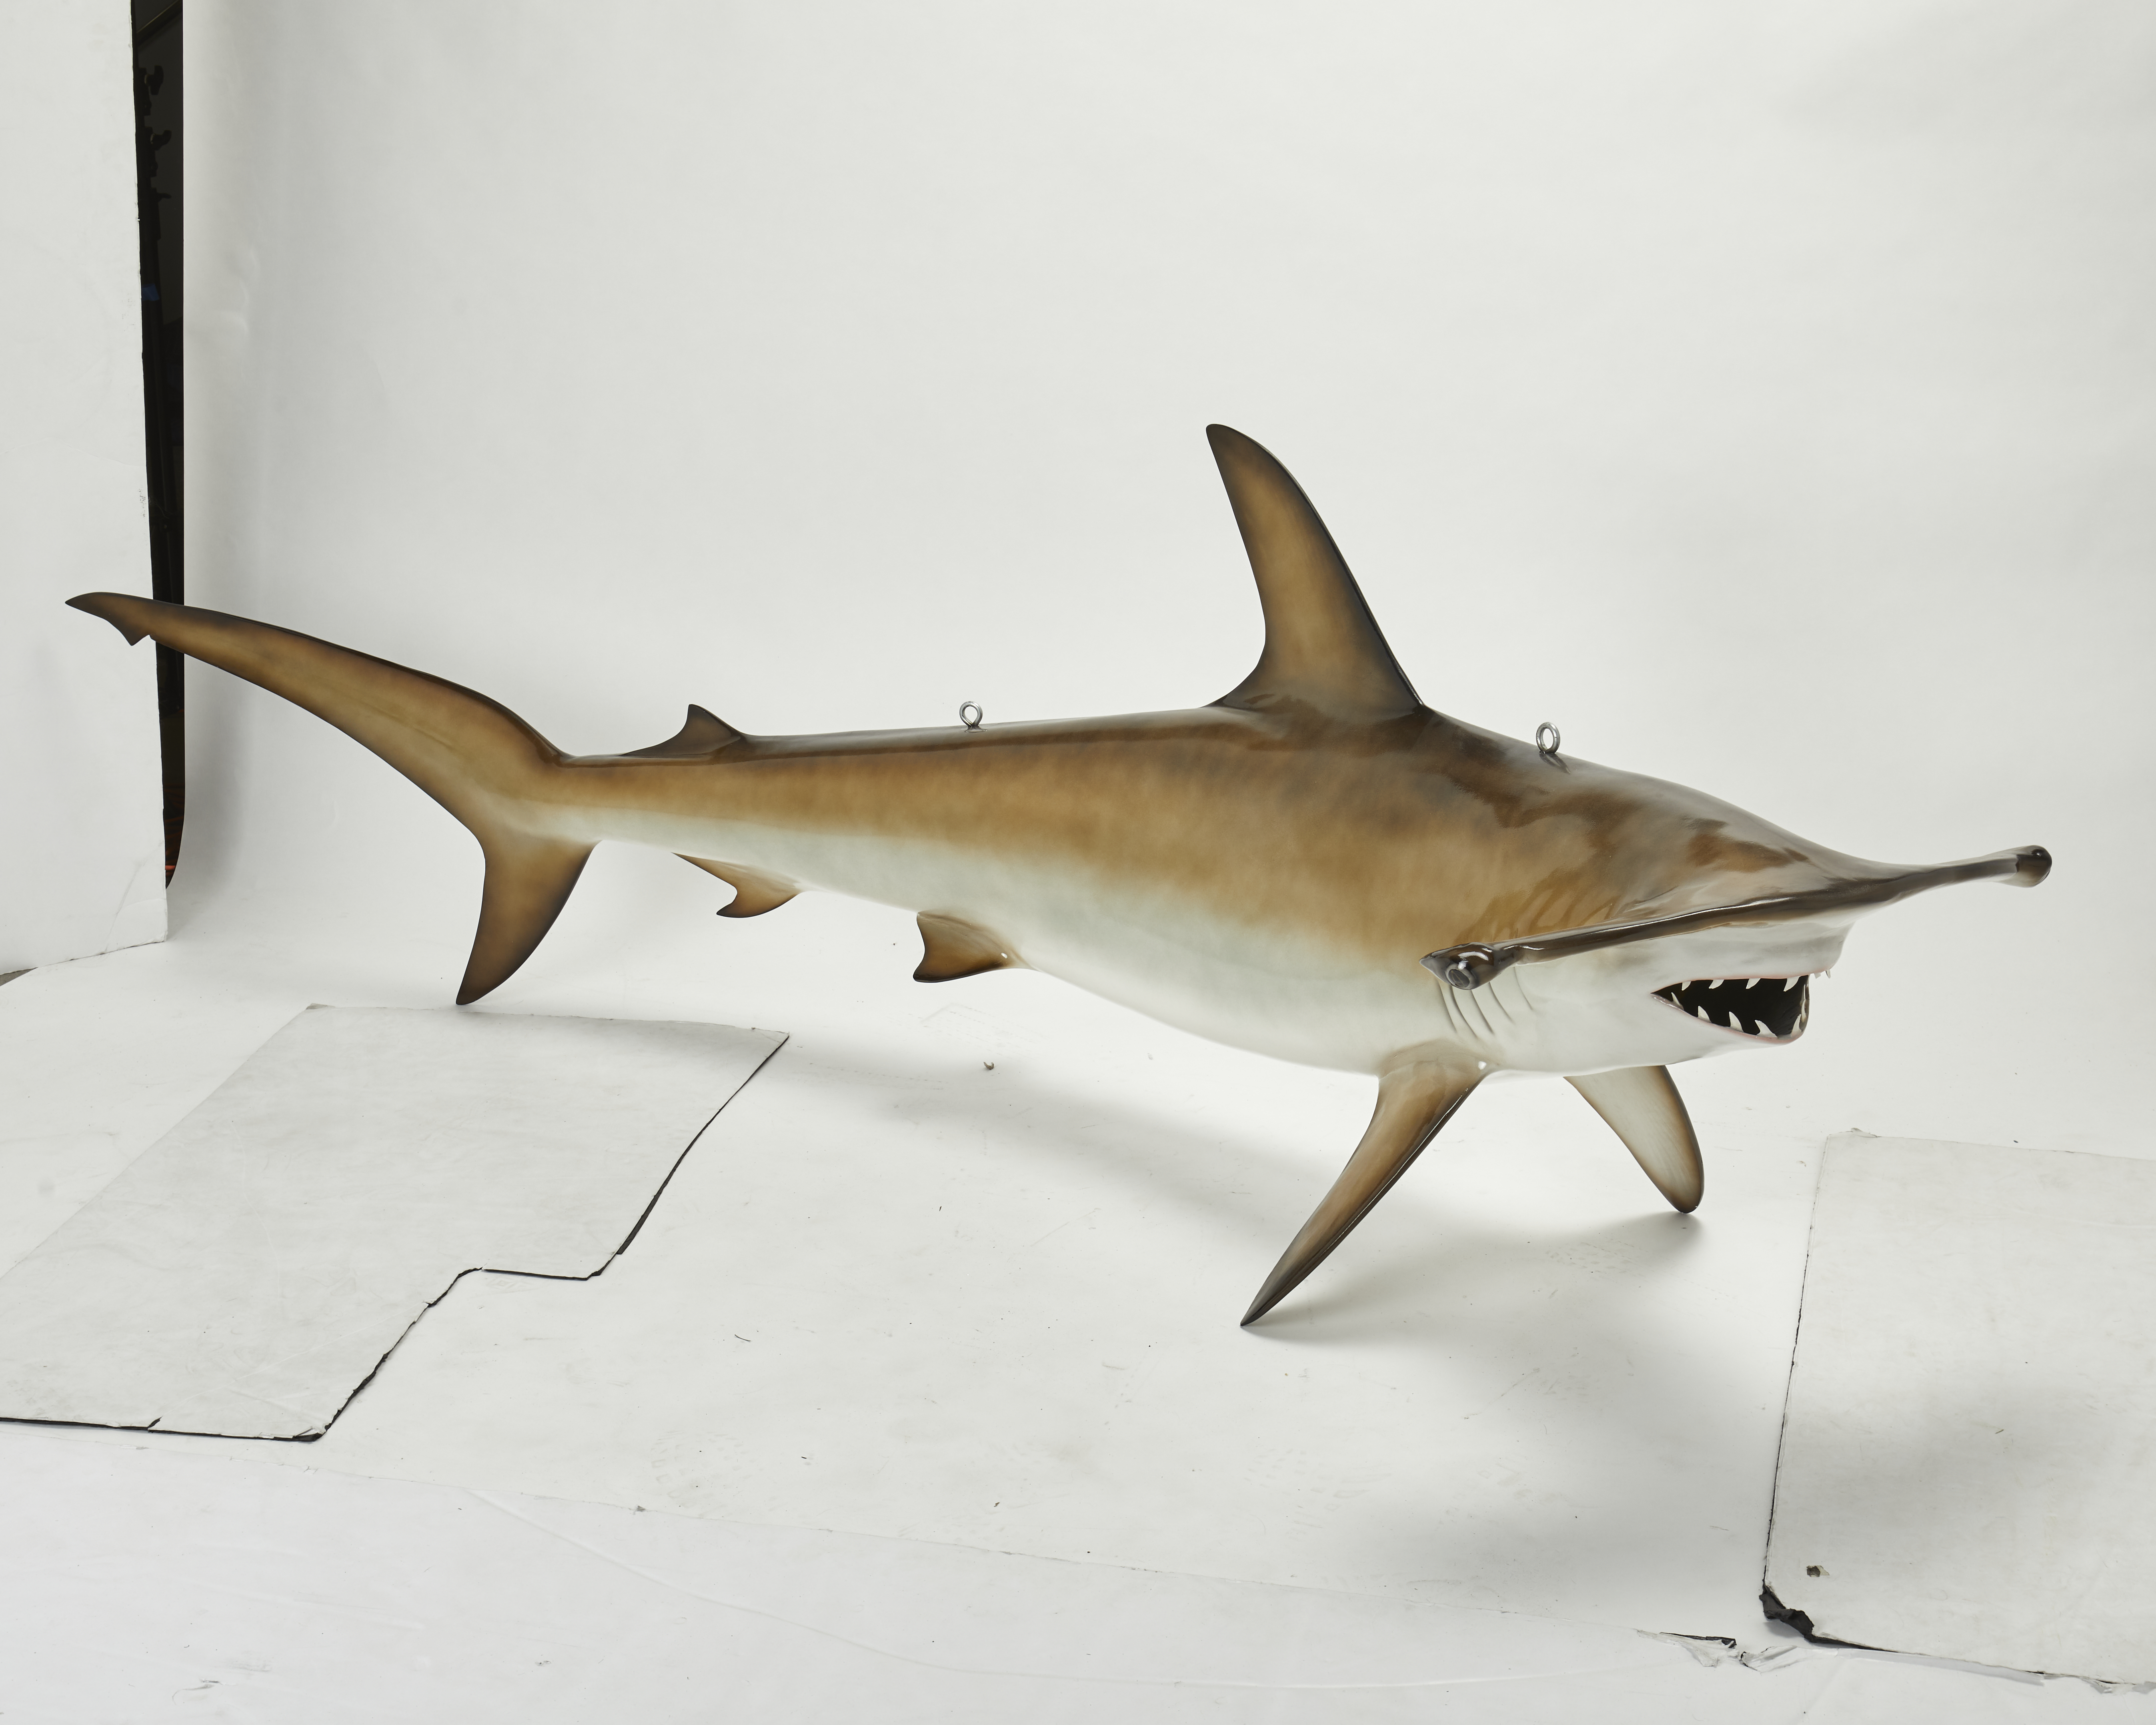 Todd Michael Guevara Hammerhead shark painted fiberglass sculpture, est. $600-$800